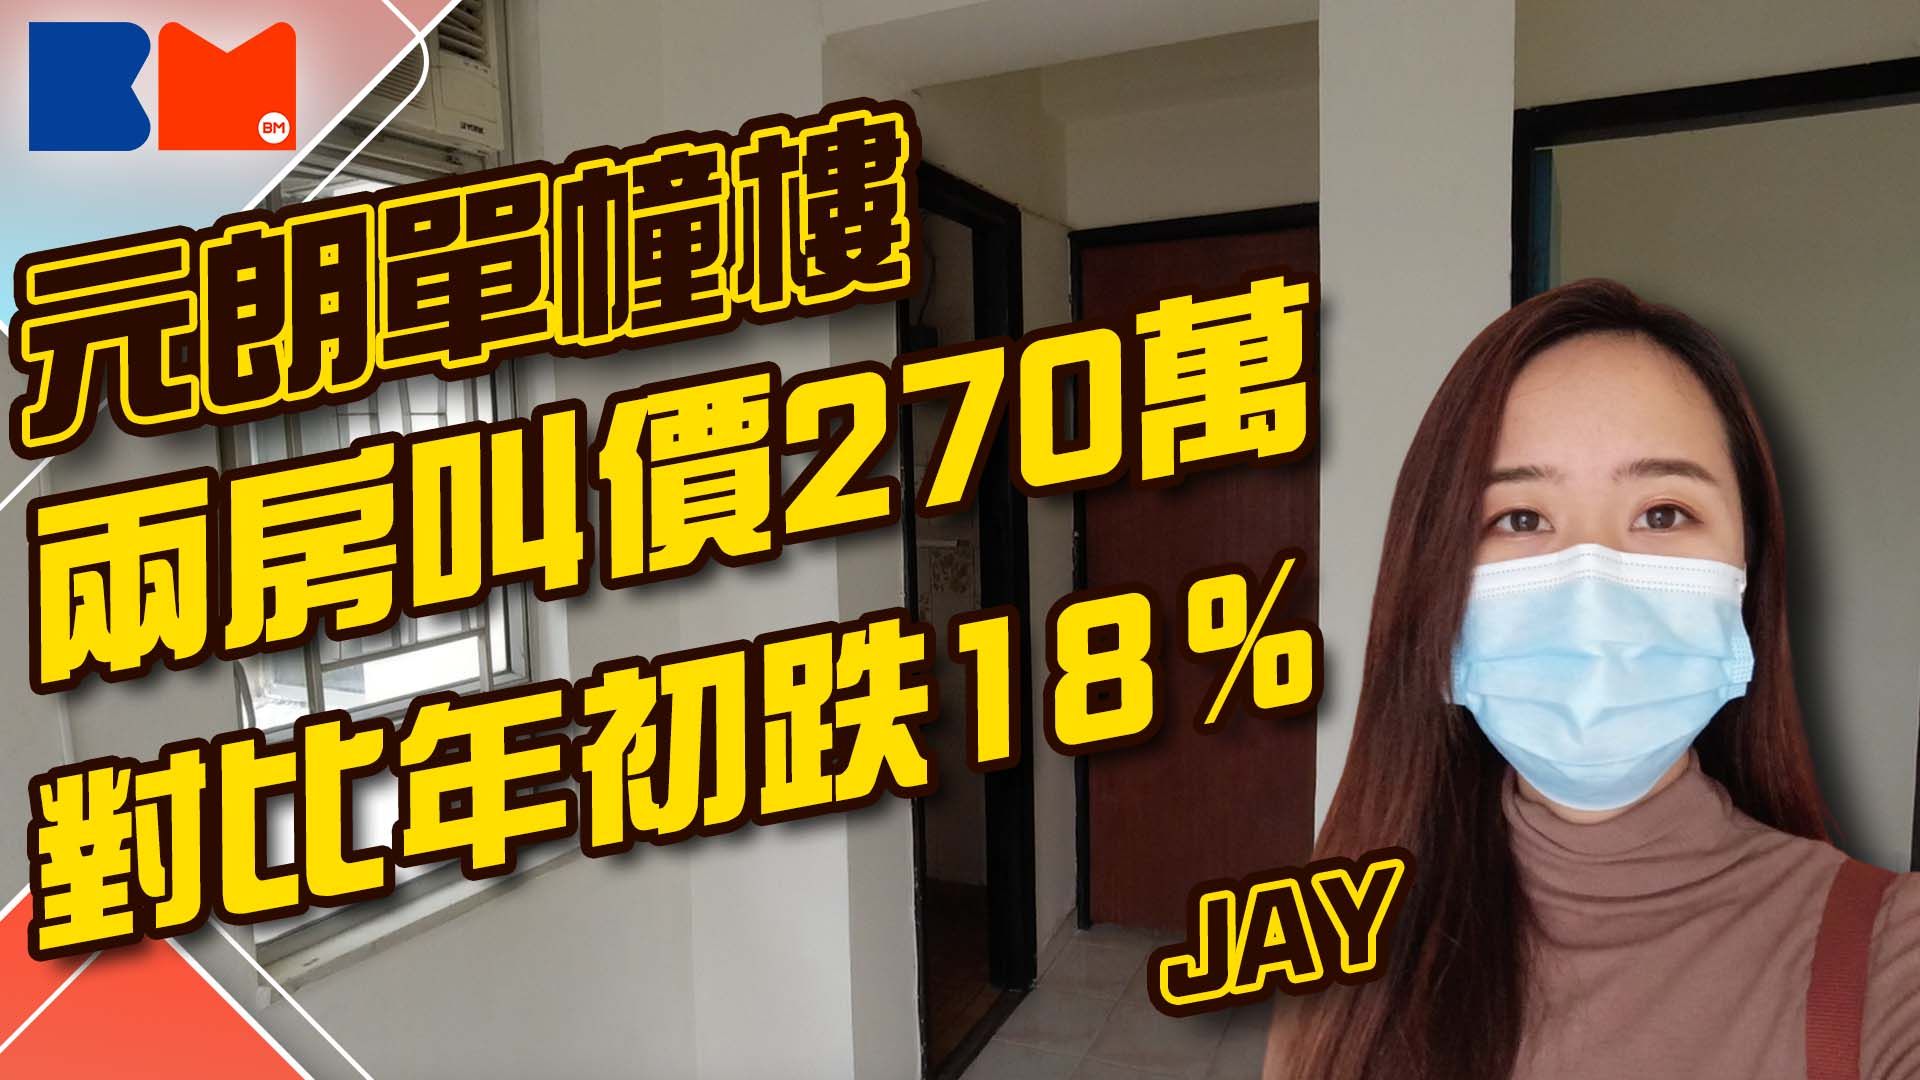 睇樓大JAY級丨元朗單幢樓 兩房叫價270萬 對比年初跌18％